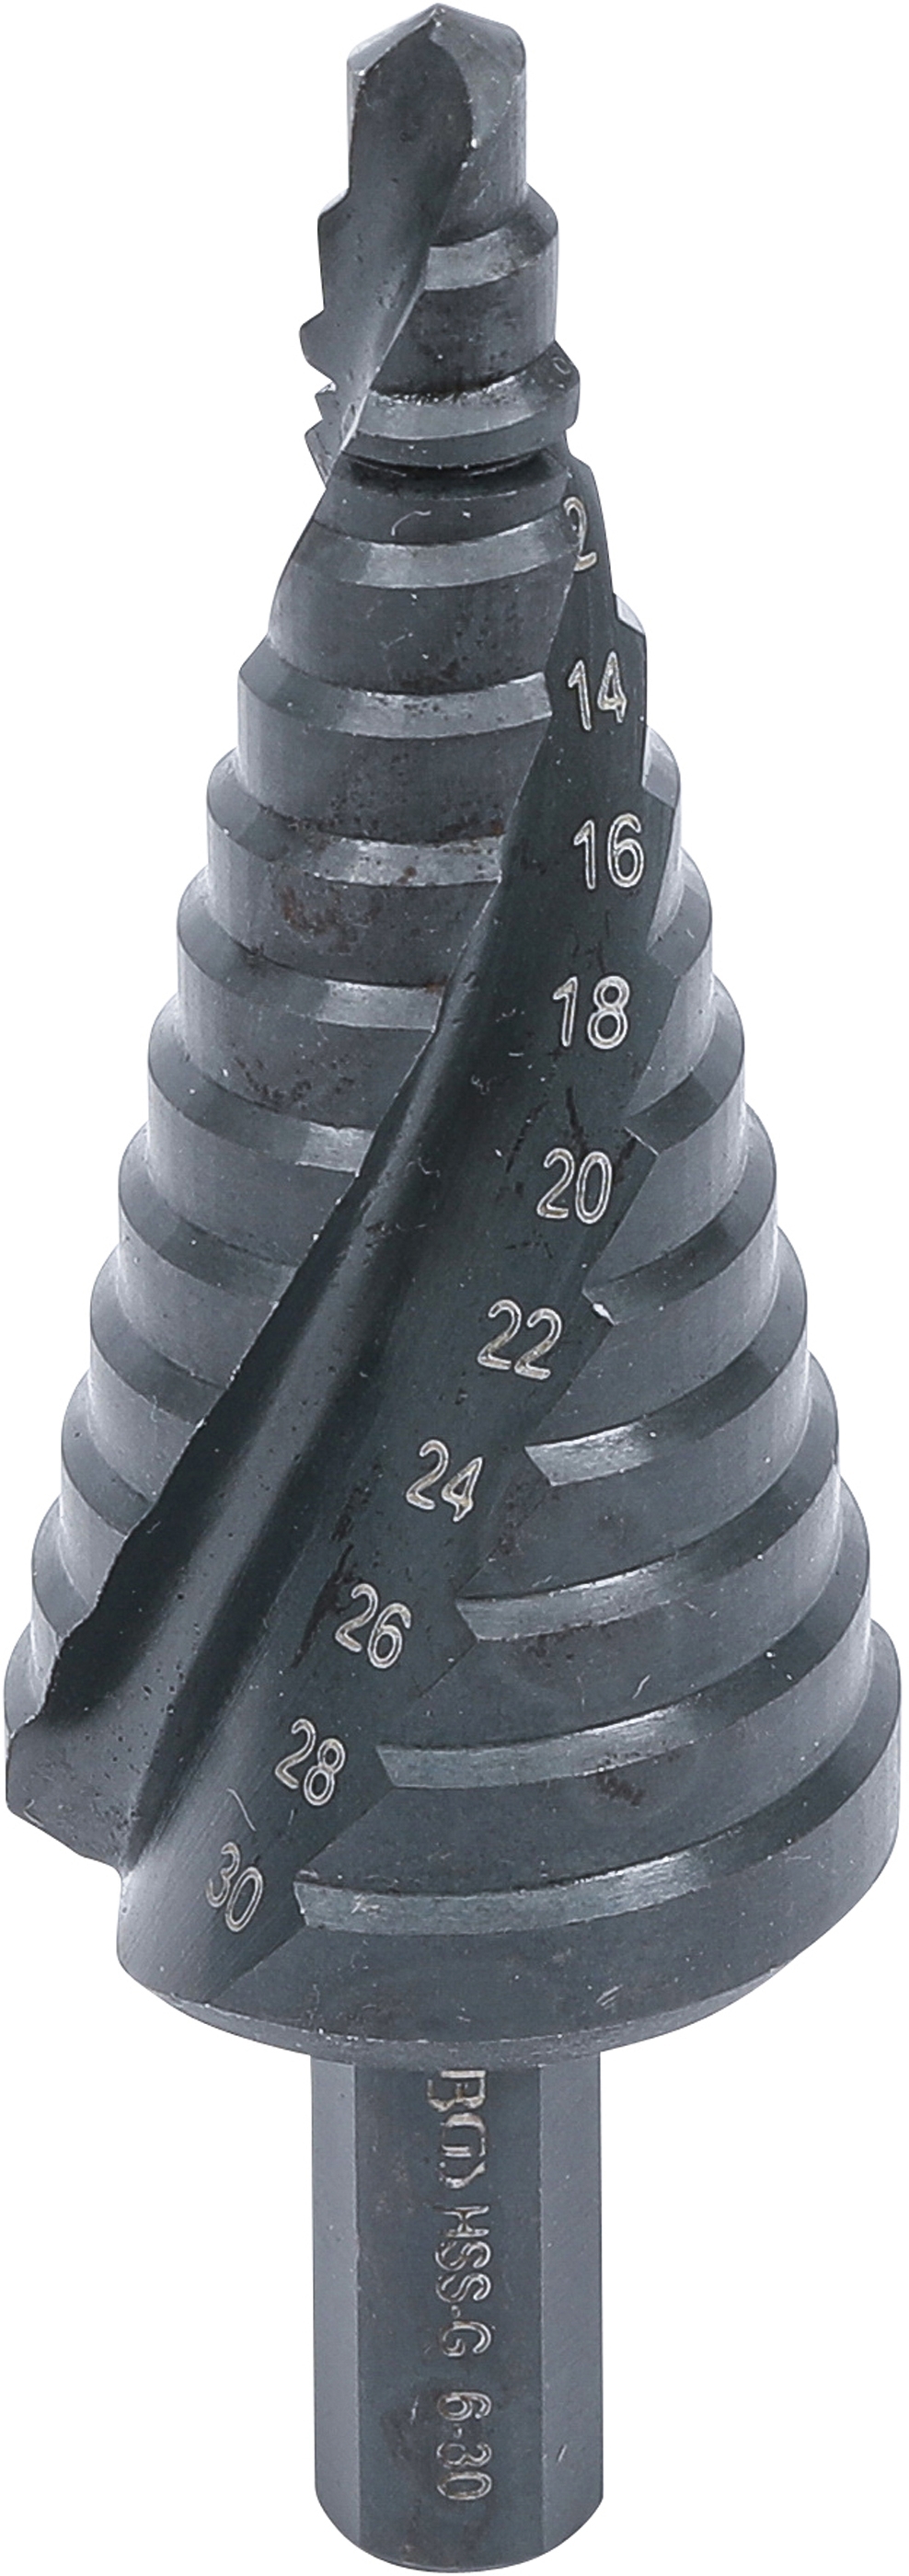 Stufenbohrer | Ø 6 - 30 mm - BGS 1945-1